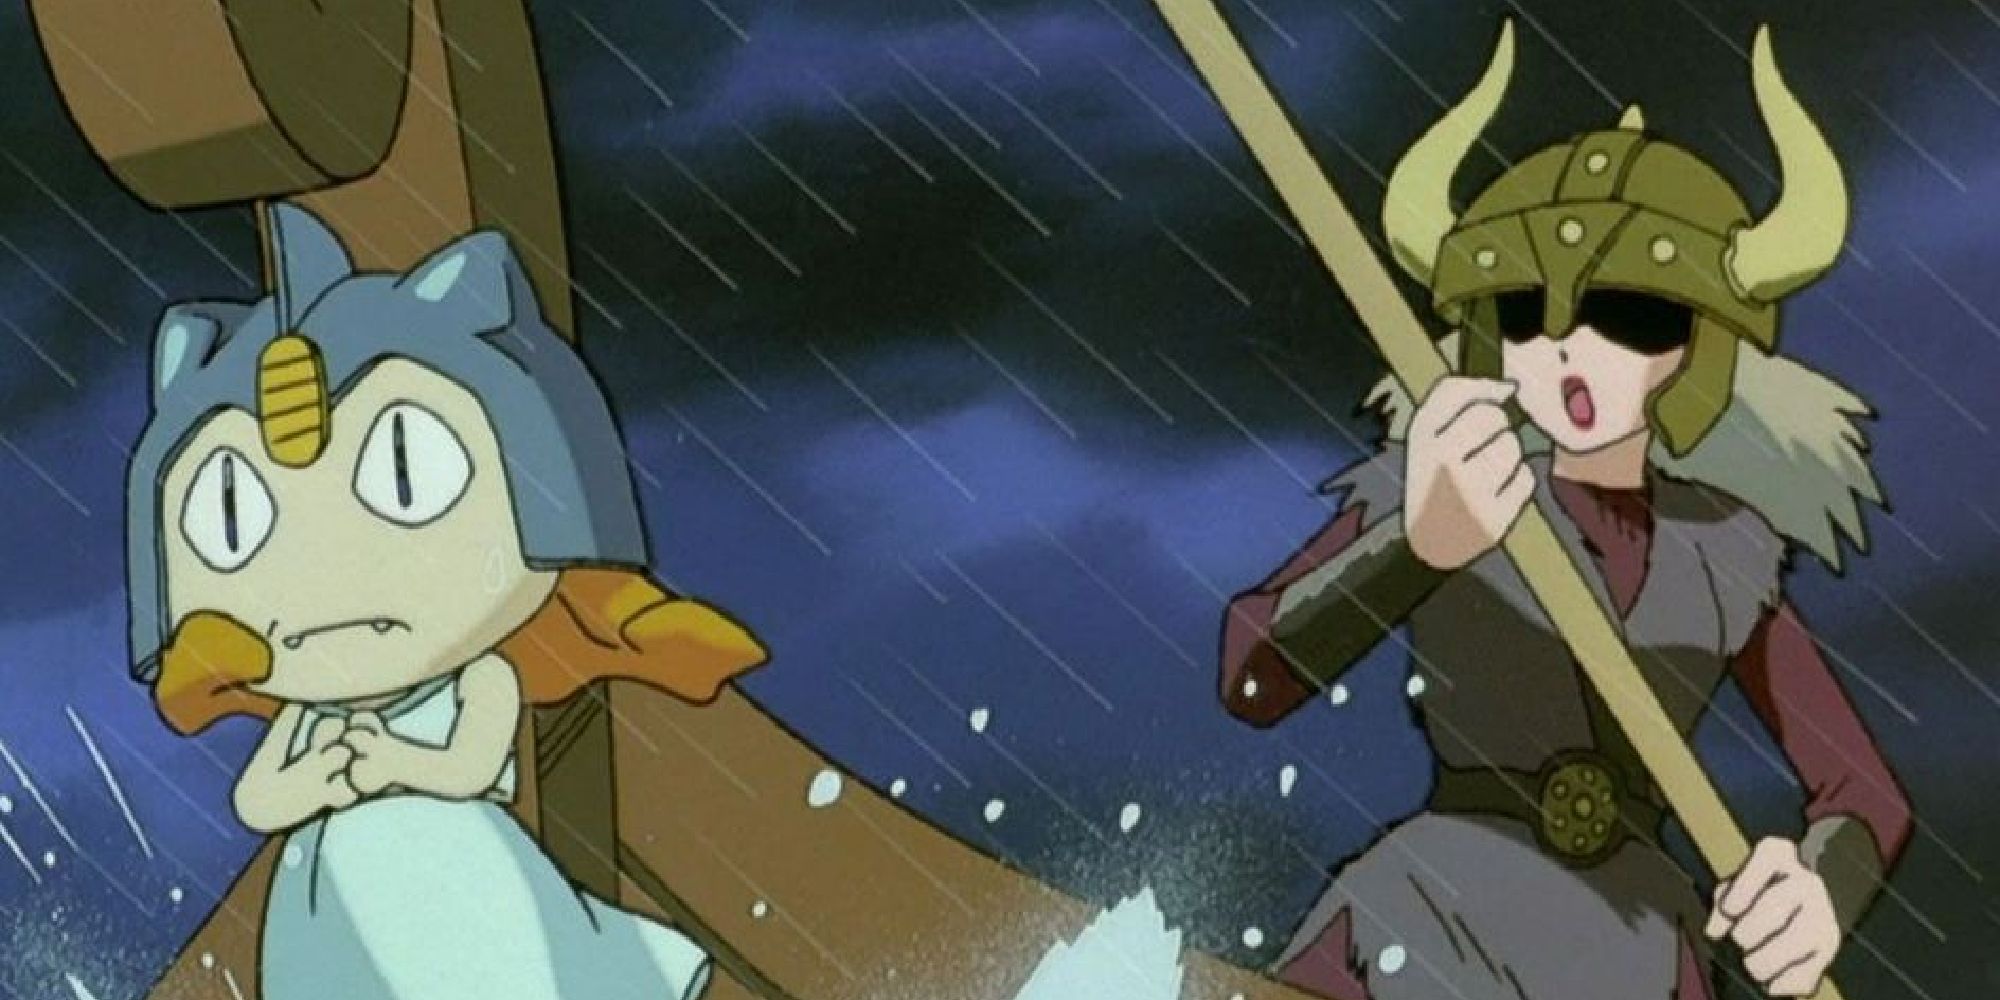 Джесси и Мяут в костюмах викингов плывут на корабле под дождем из аниме "Покемоны"